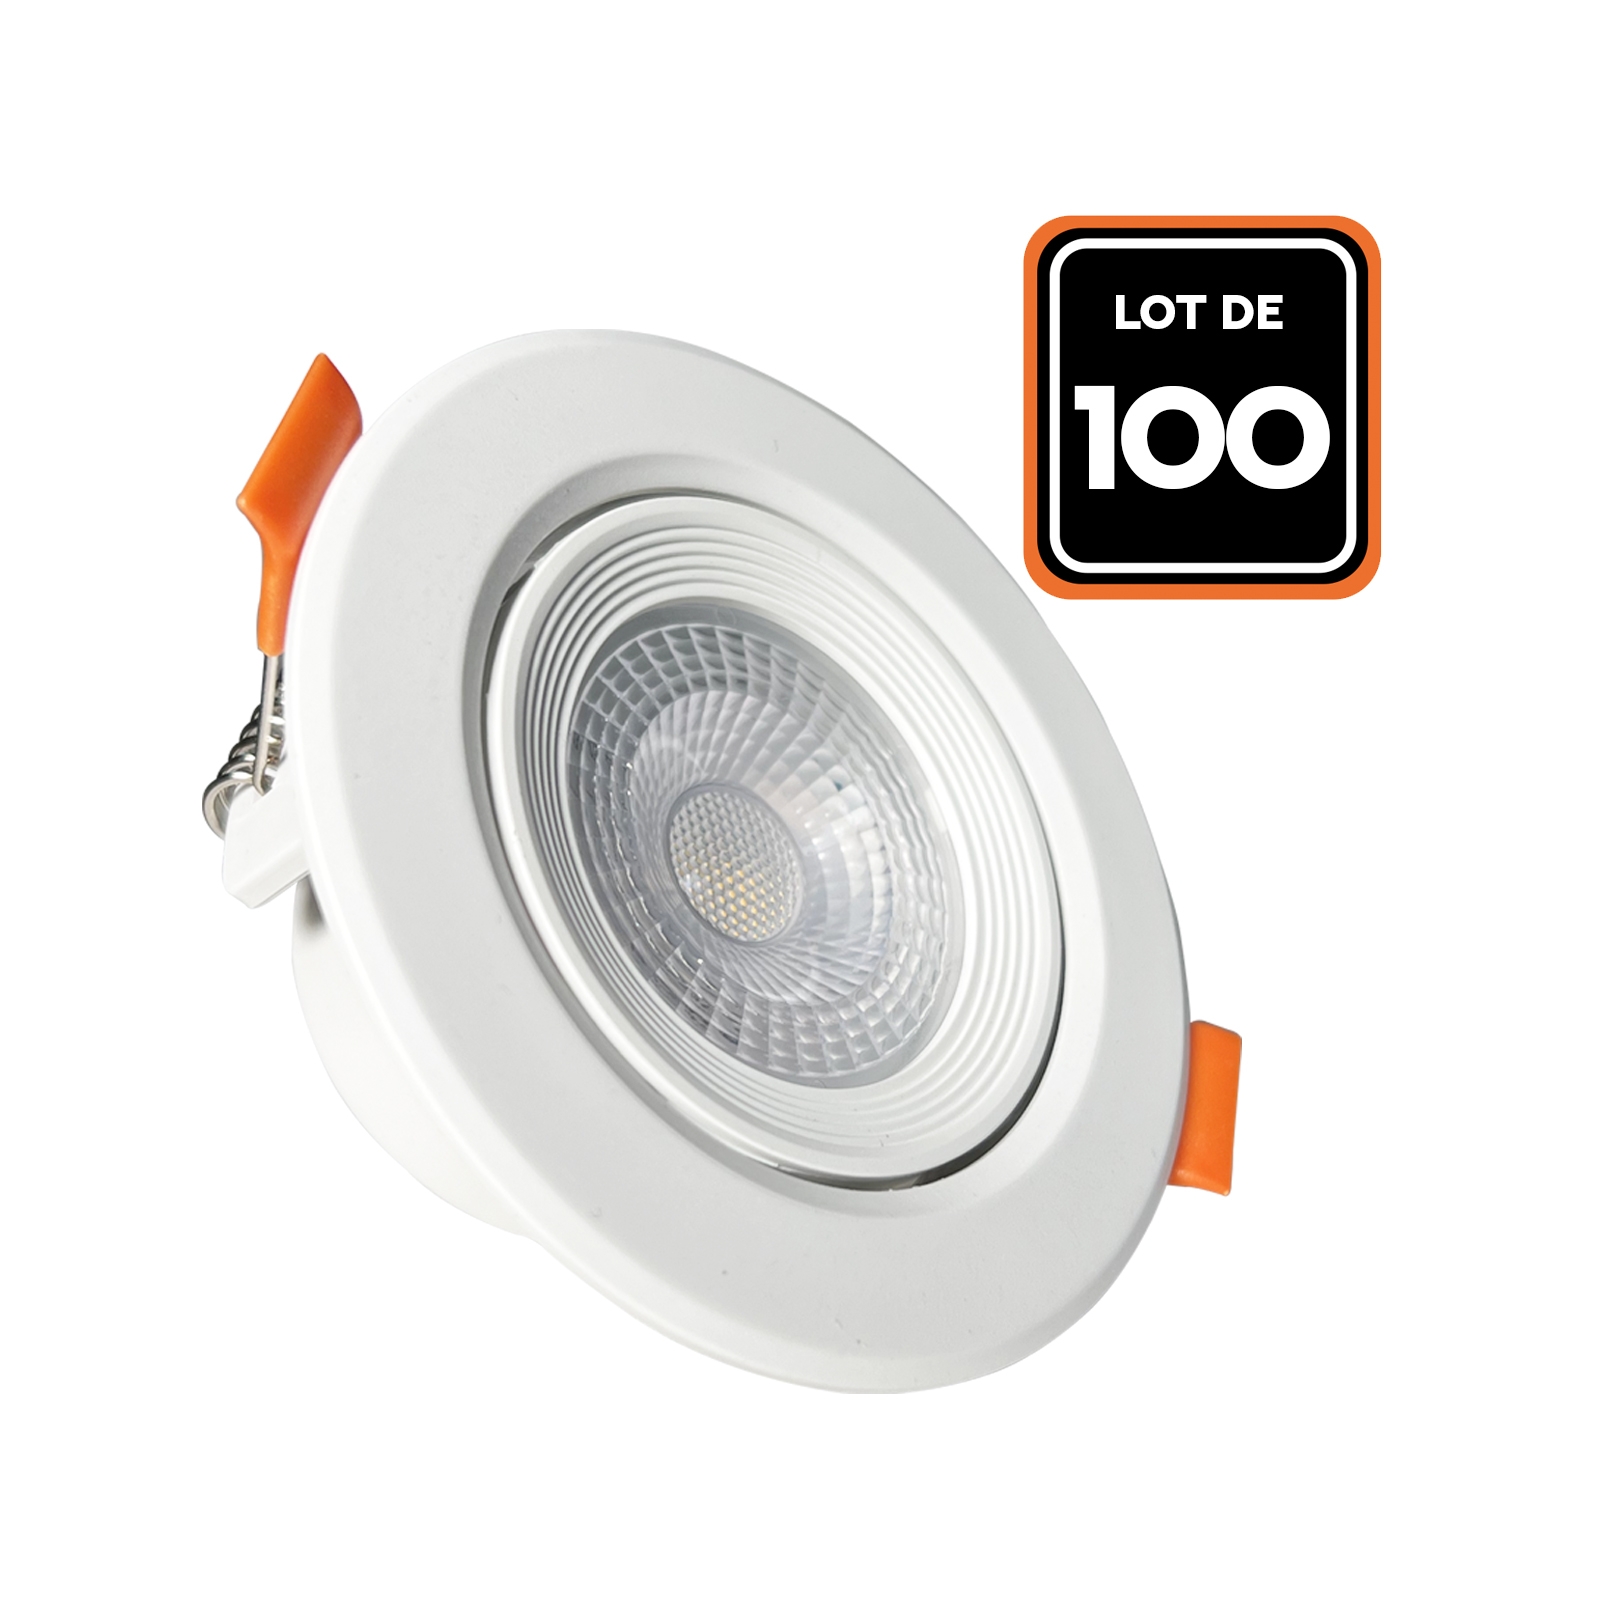 Lot de 100 Spot LED Encastrable Rond 5W - Blanc Chaud 3000K